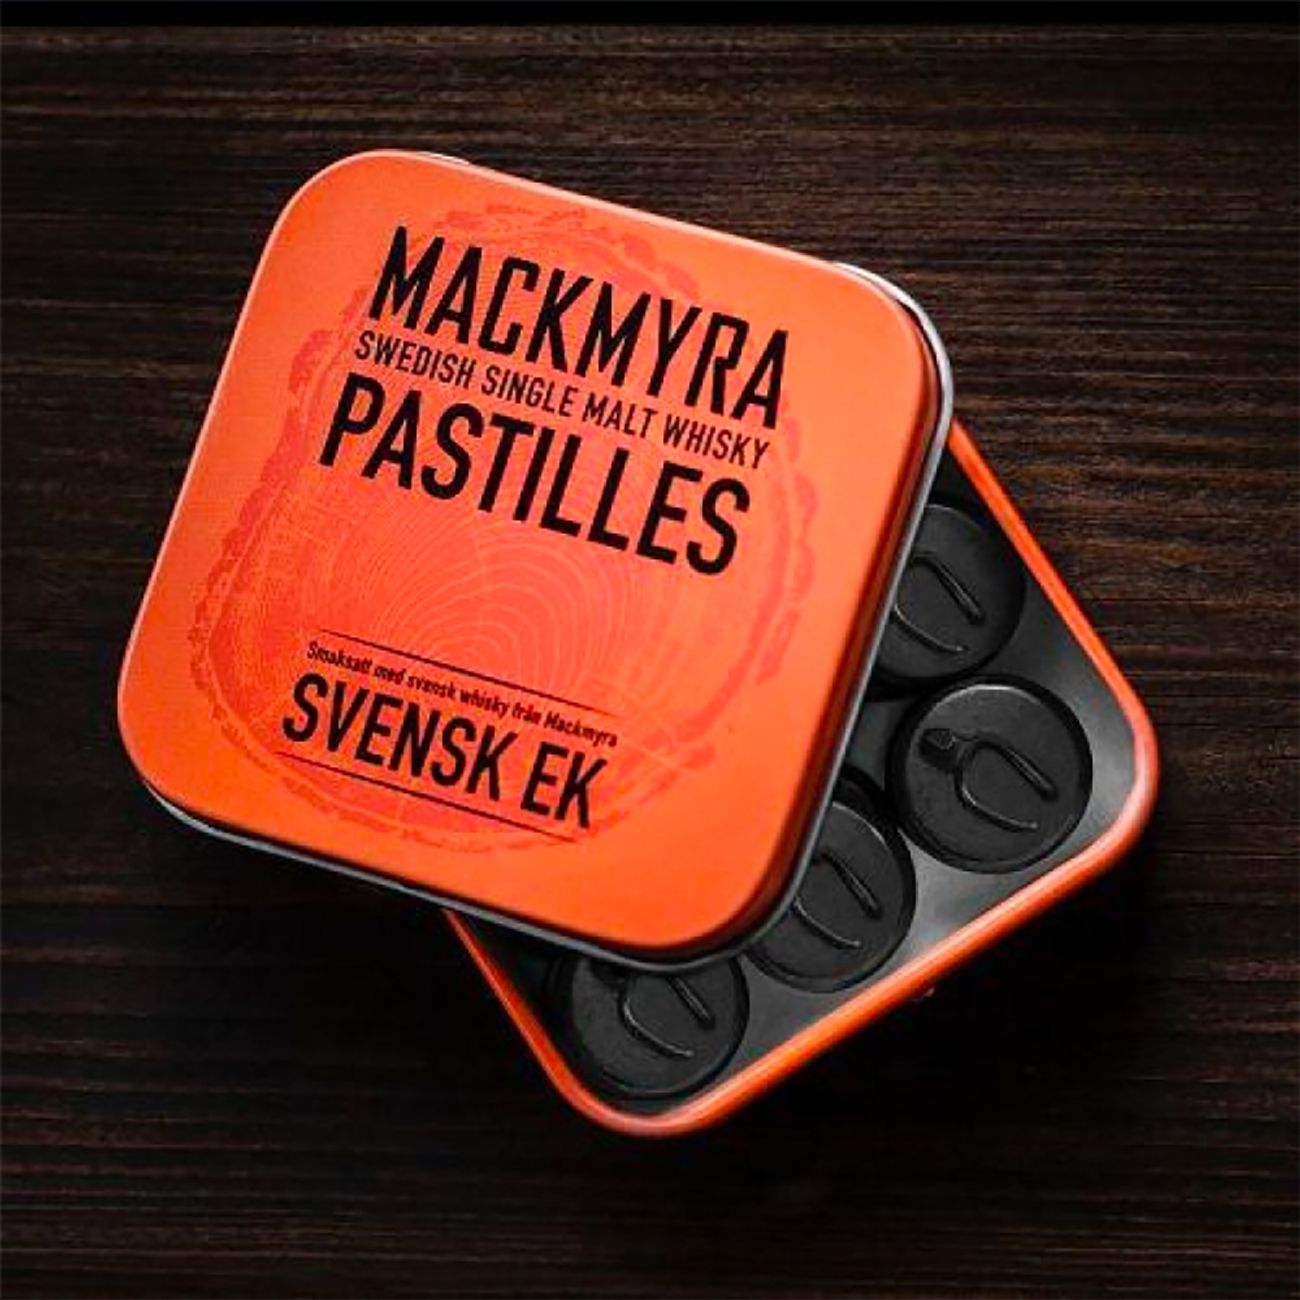 mackmyra-pastiller-svensk-ek-82026-2